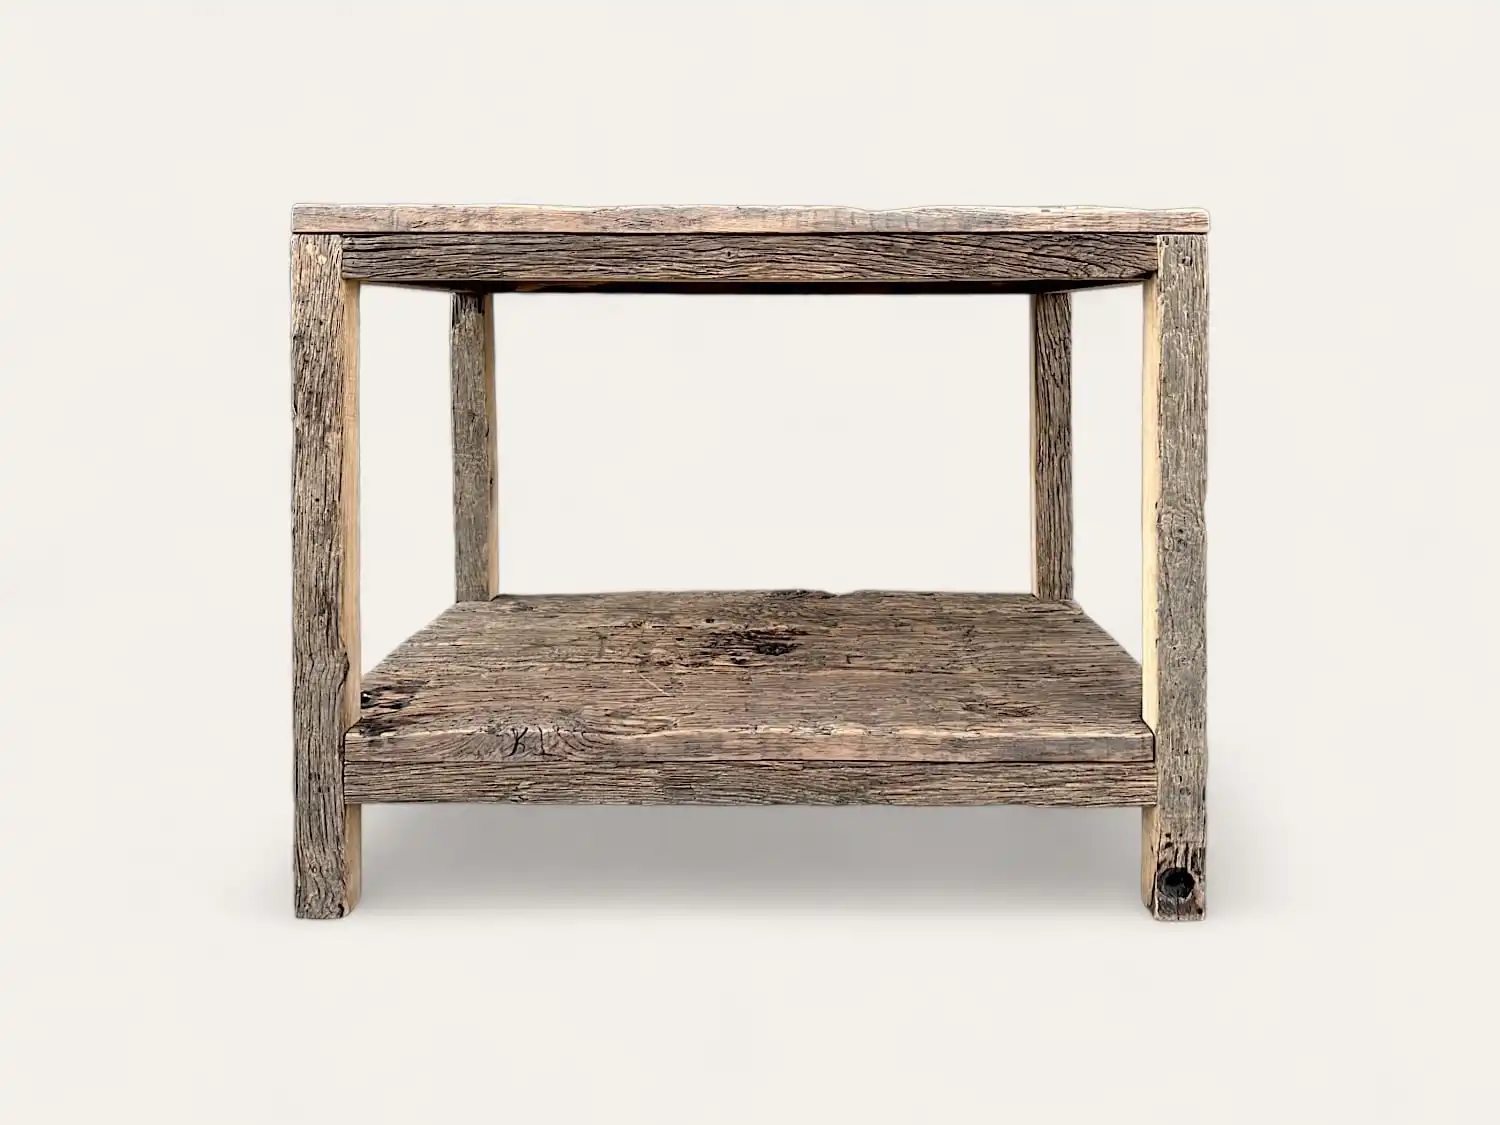 Une table d'appoint rustique en meuble bois ancien avec une étagère inférieure, présentant une texture naturelle patinée et une construction robuste sur un fond uni.